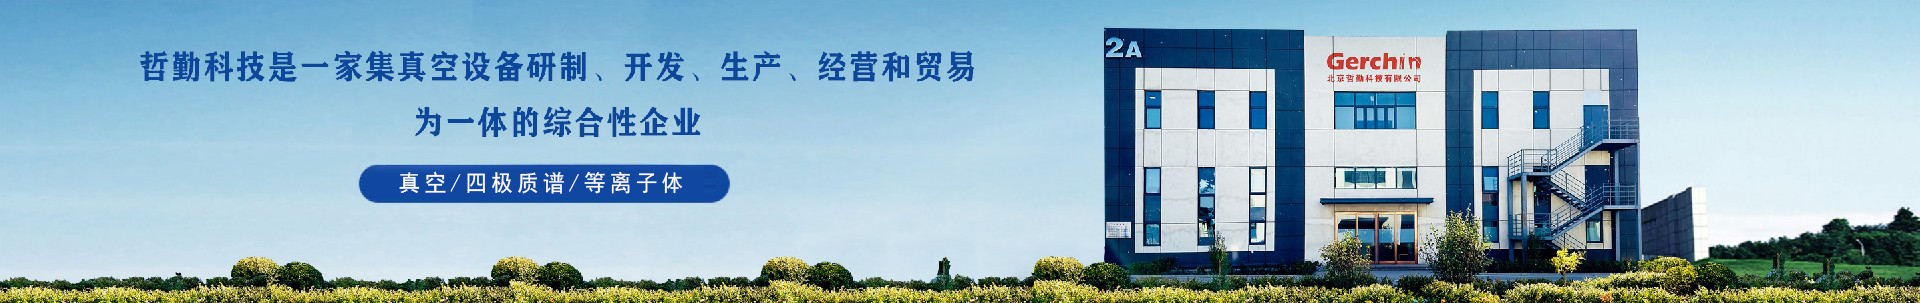 第二十届北京分析测试学术报告会-企业新闻-龙8唯一官网科技有限公司